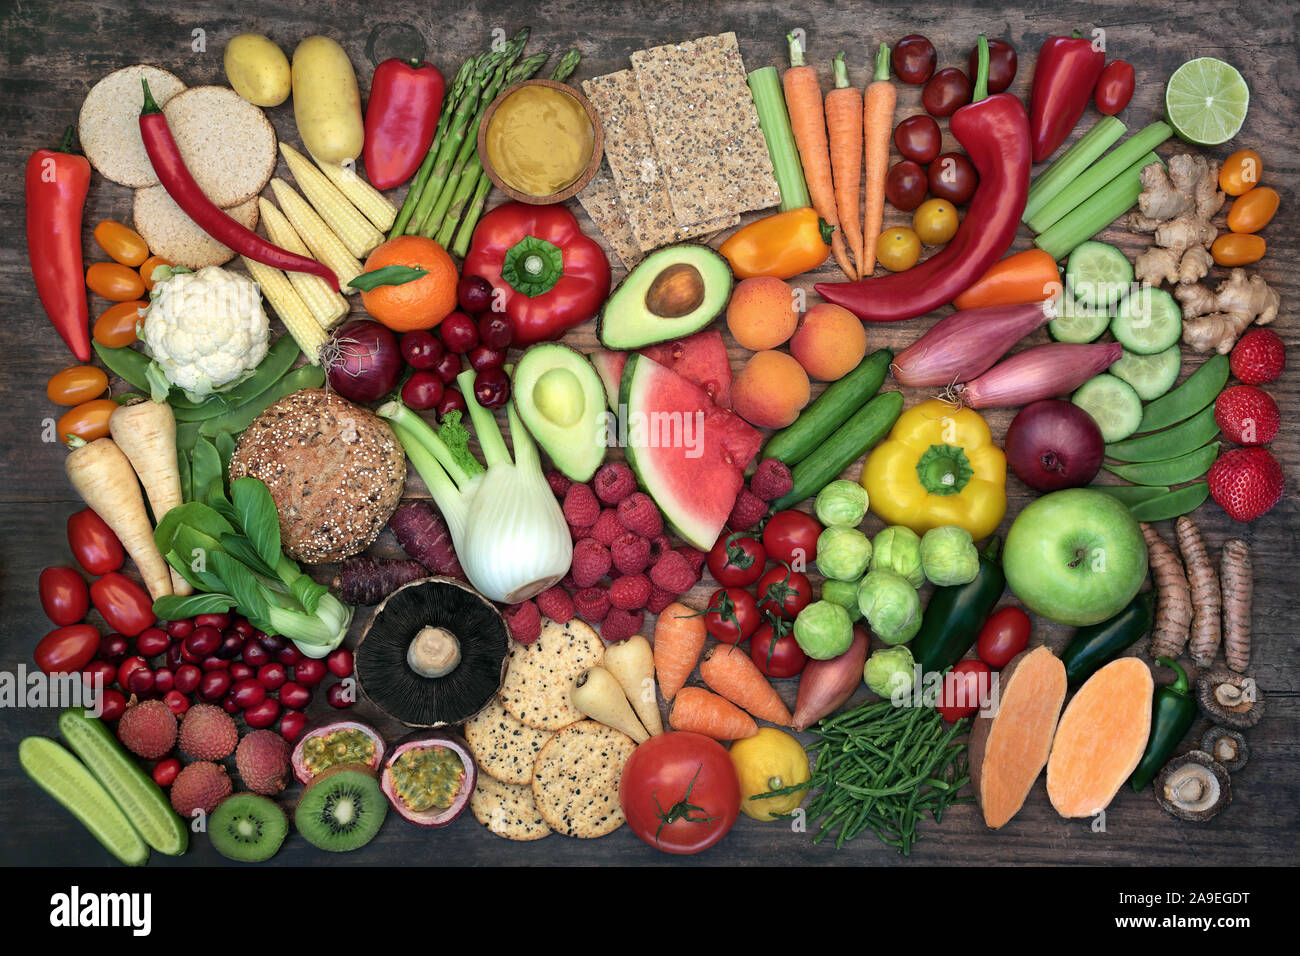 Grande collecte alimentaire santé végétalienne avec fruits, légumes, noix, craquelins de blé entier et d'épices. Riche en protéines, vitamines, minéraux et antioxydants. Banque D'Images